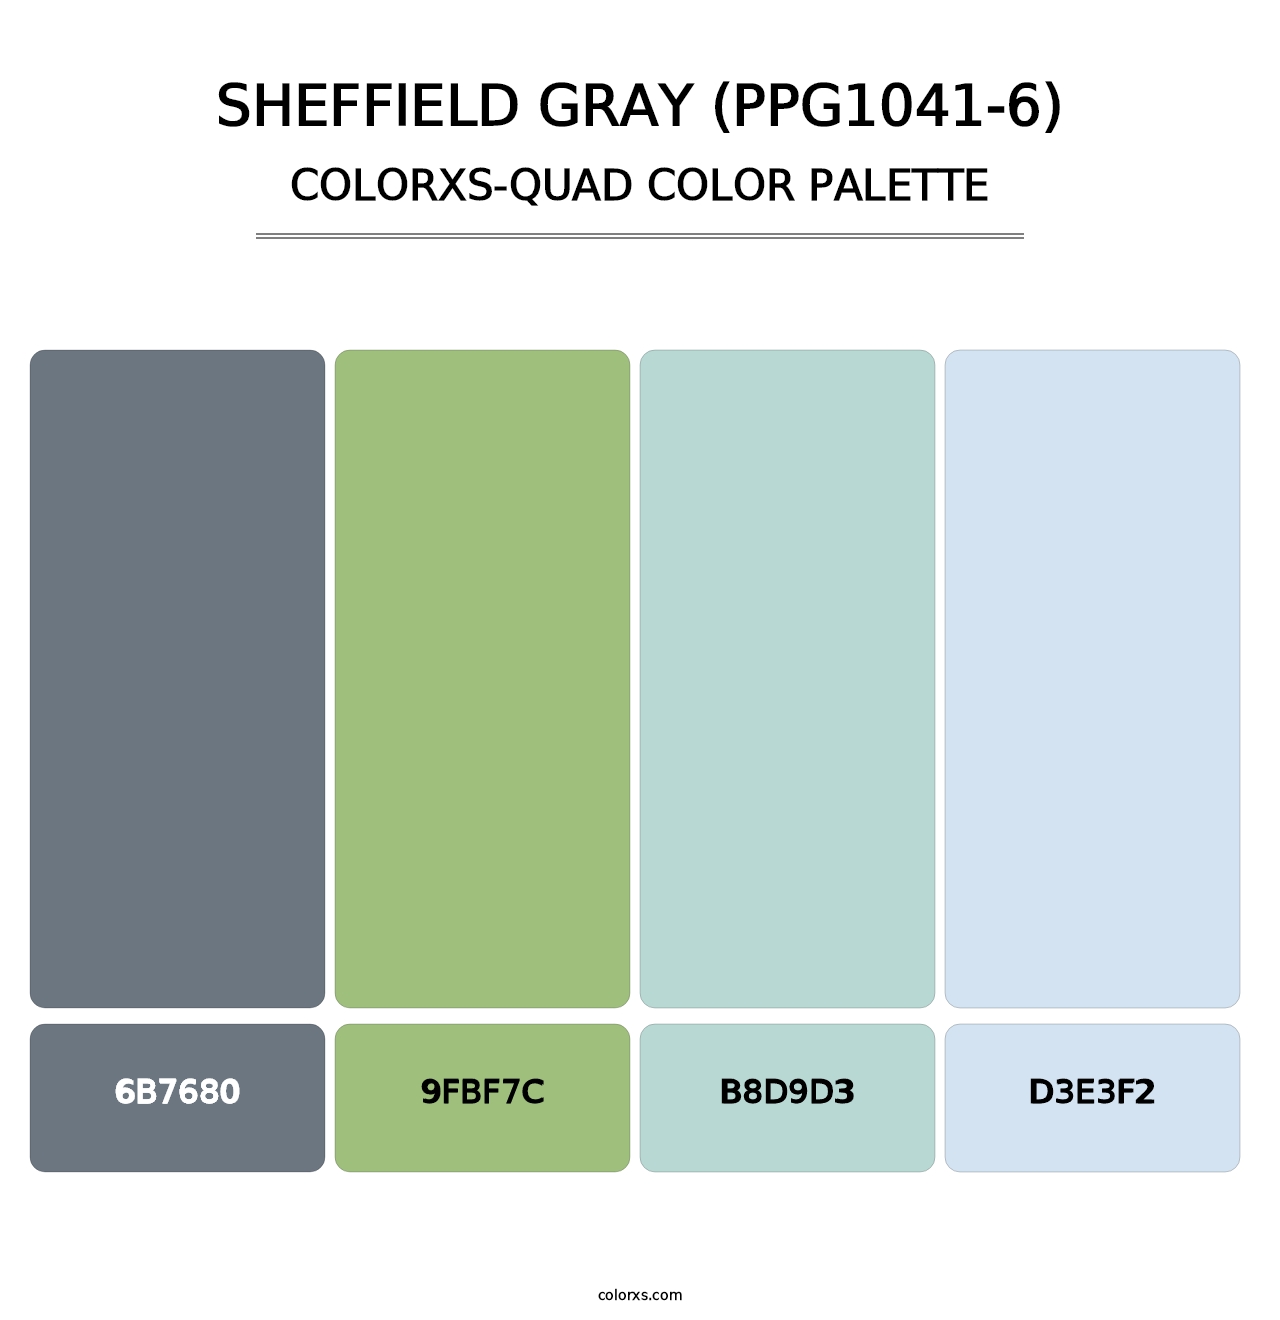 Sheffield Gray (PPG1041-6) - Colorxs Quad Palette